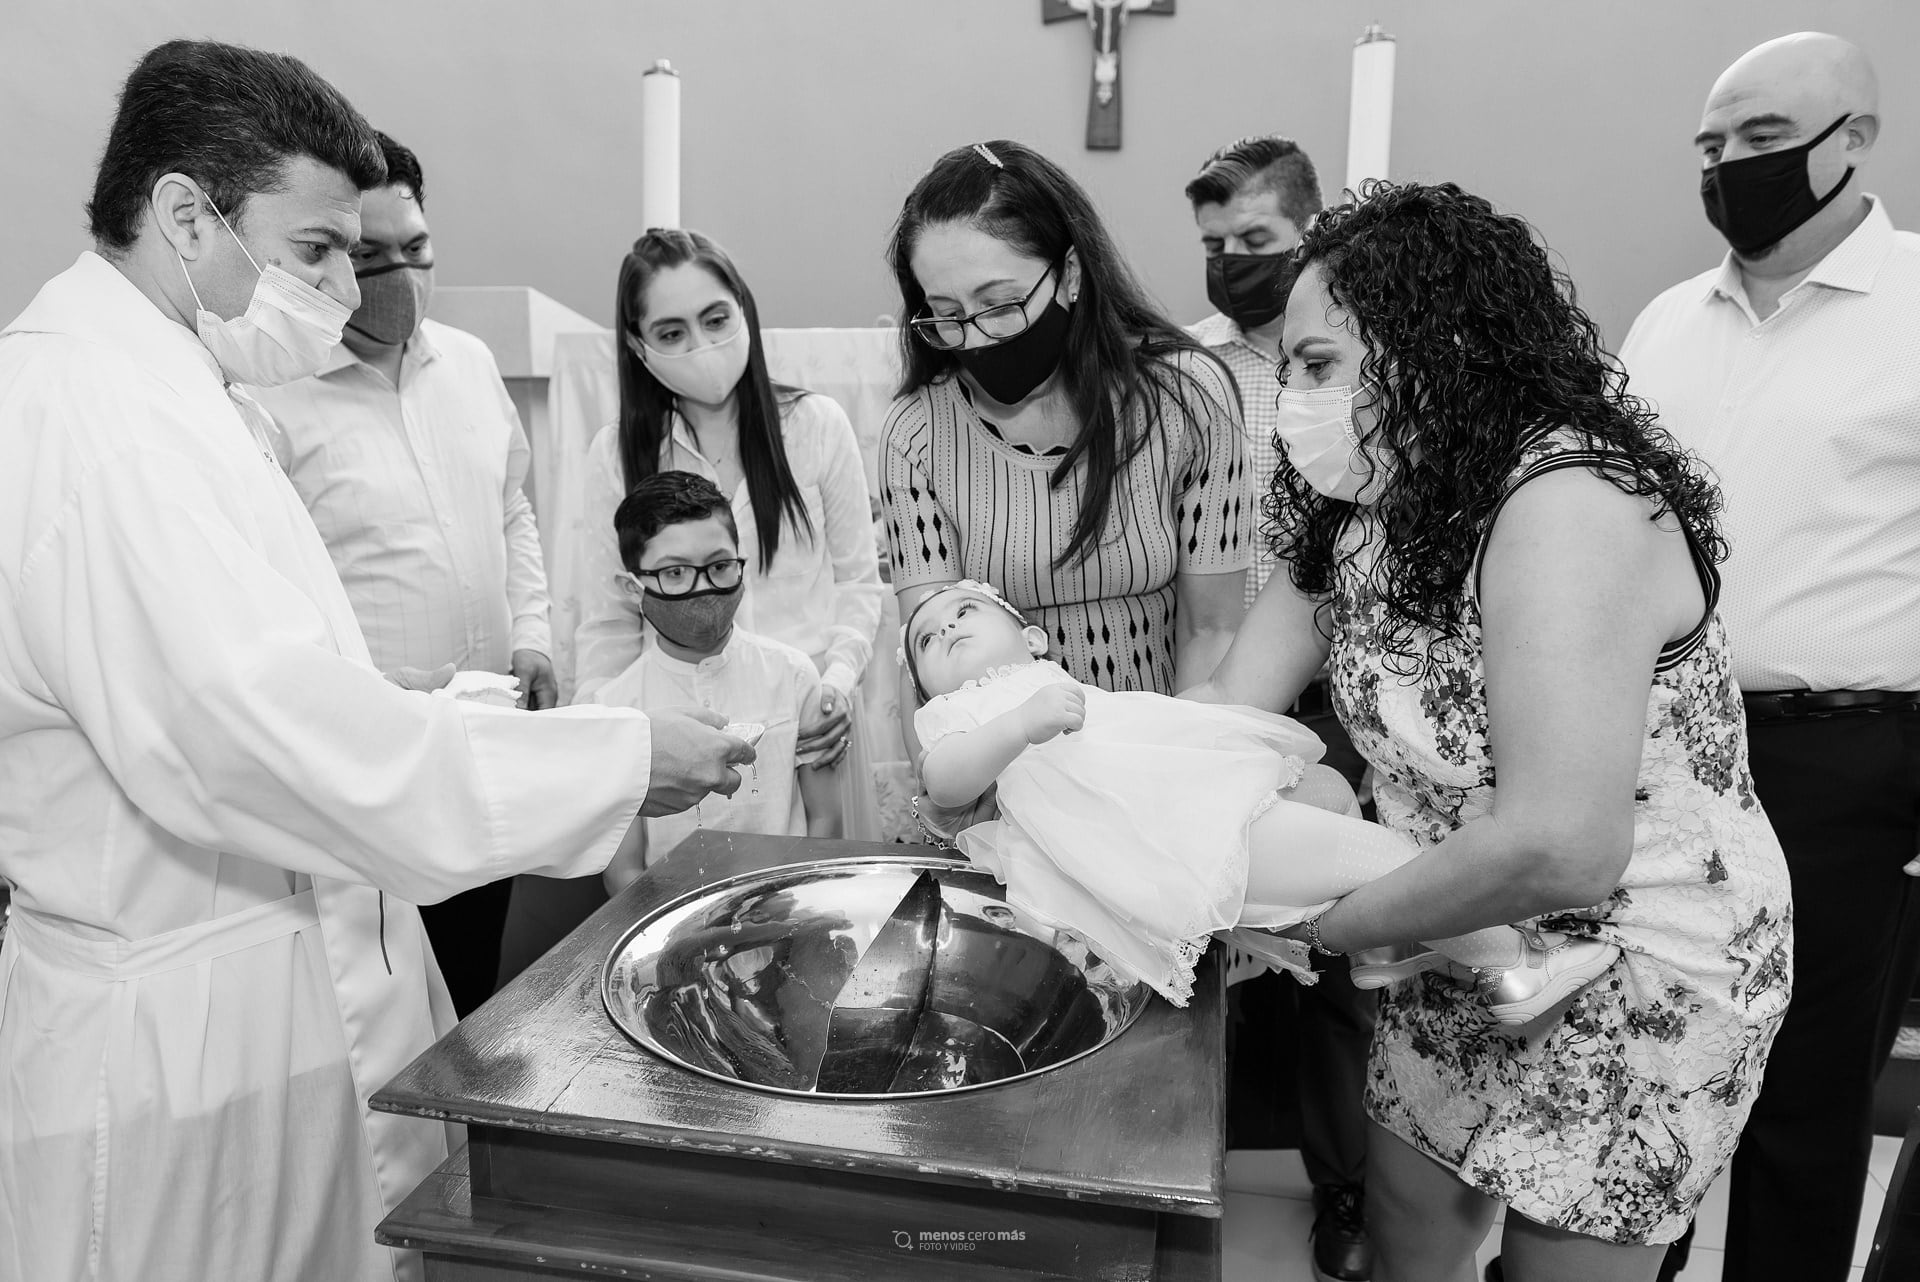 Mariana recibe el sacramento del bautizo en la Parroquia Nuestra Señora de Guadalupe Salud de los Enfermos. En las fotos mariana es acompañada de sus padres, hermano y padrinos.